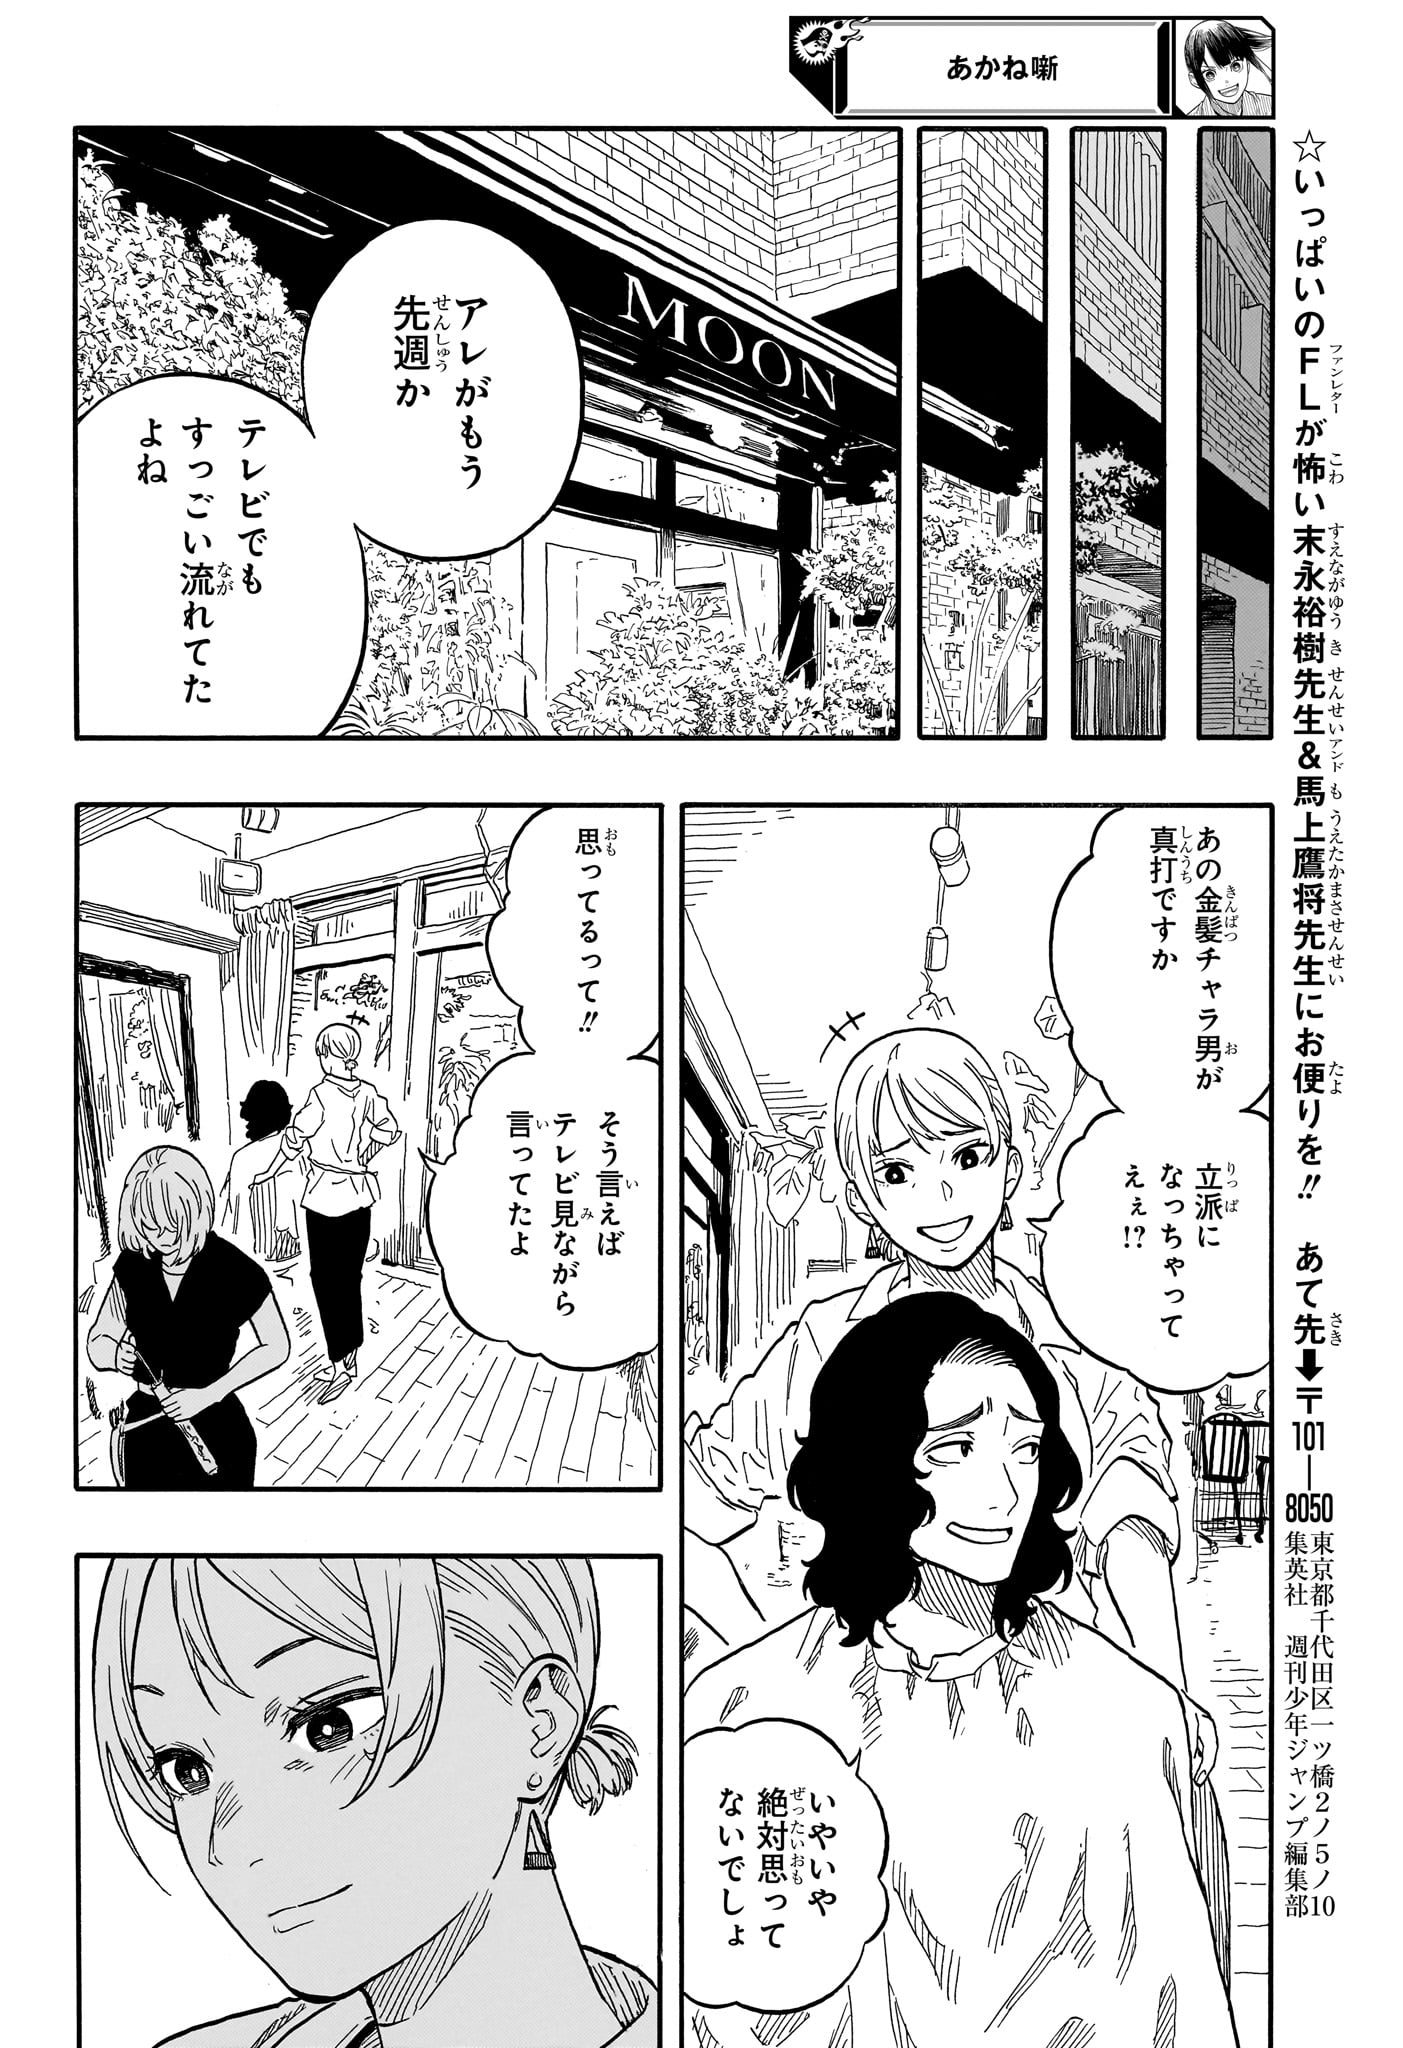 Akane-Banashi - Chapter 117 - Page 18